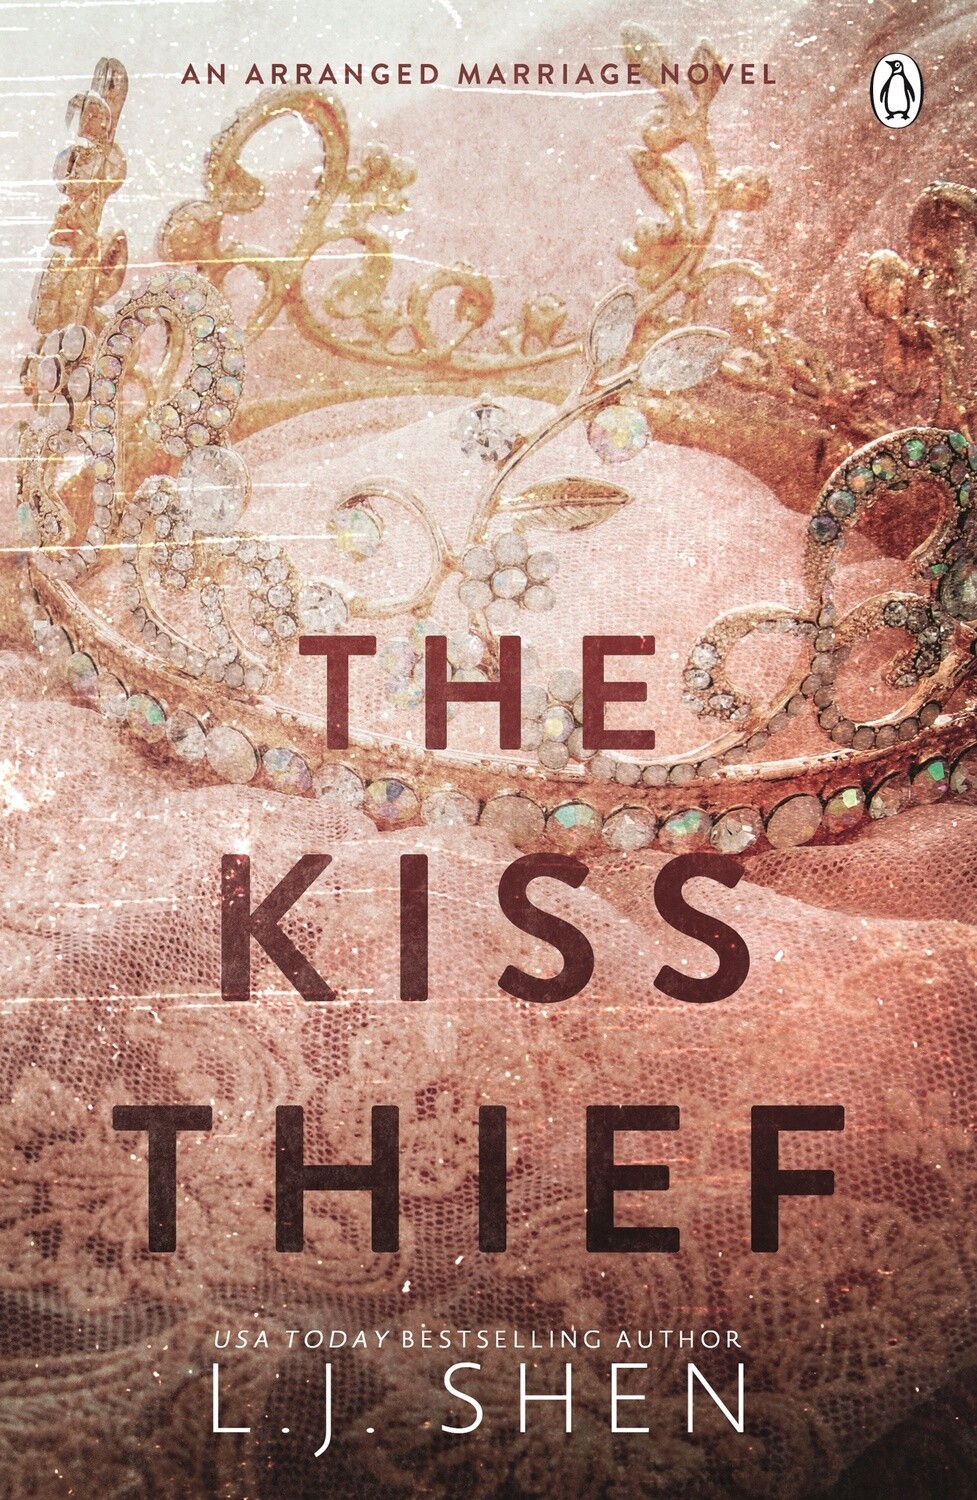 The Kiss Thief by L. J. Shen